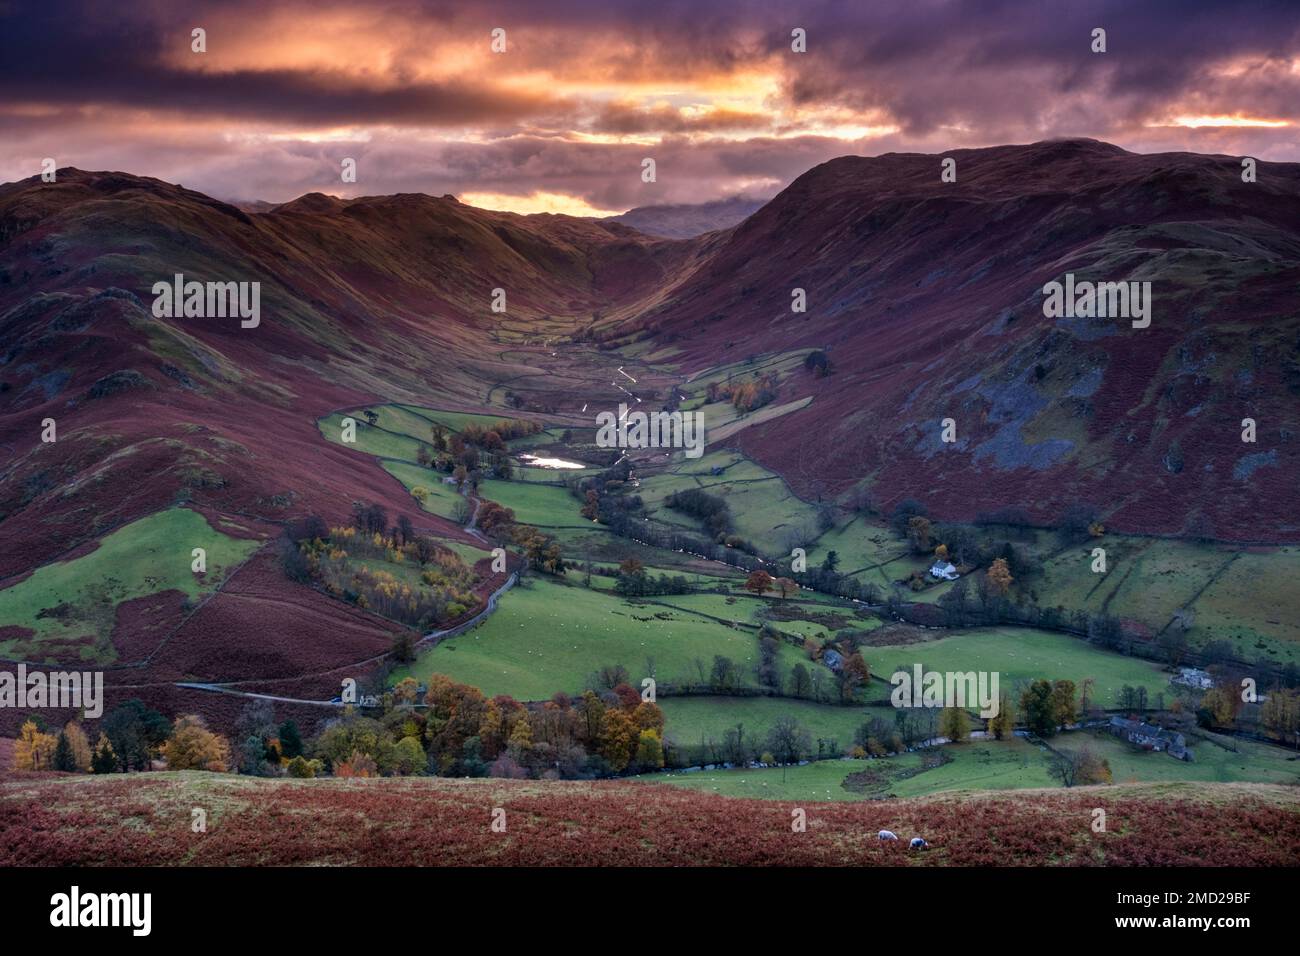 La vallée de Boredale, place Fell et Beda Fell en automne, Martindale Common, Lake District National Park, Cumbria, Angleterre, Royaume-Uni Banque D'Images